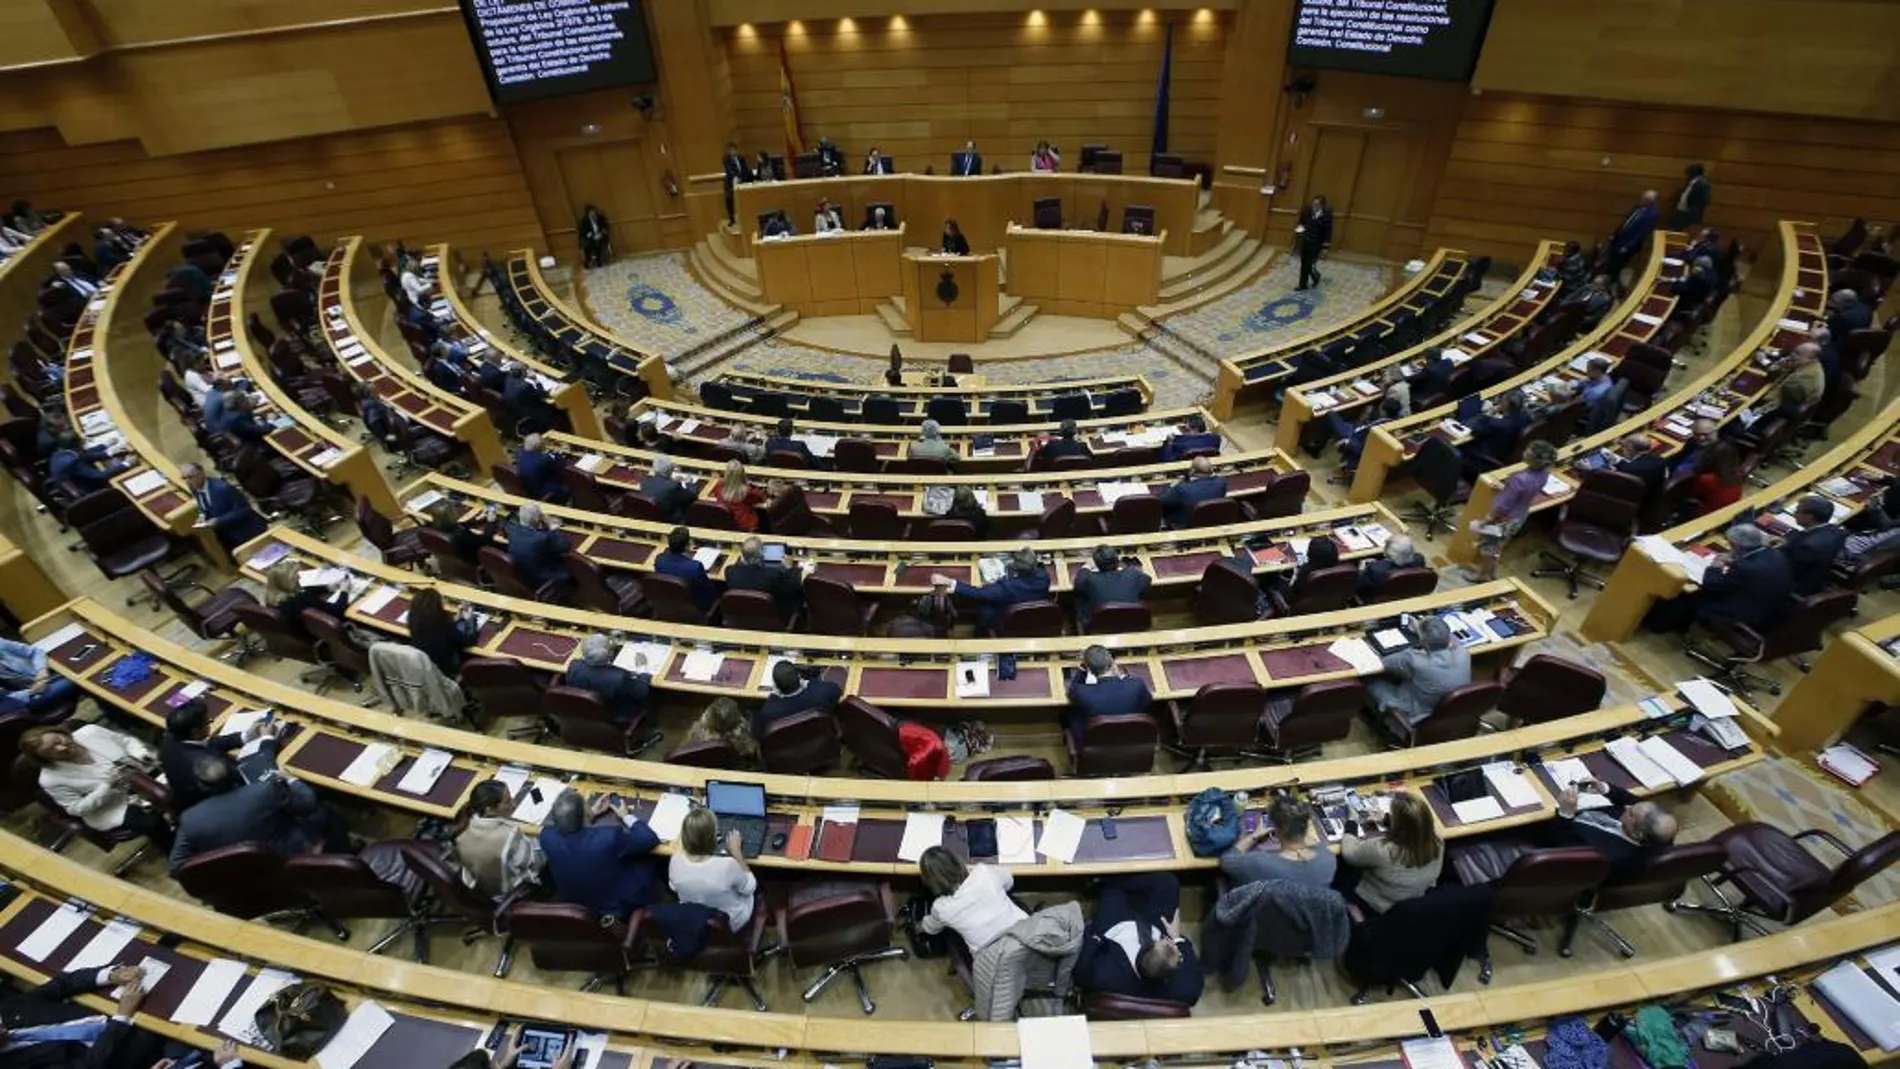 Vista general del pleno del Senado durante el debate del proyecto de ley orgánica de reforma del Tribunal Constitucional